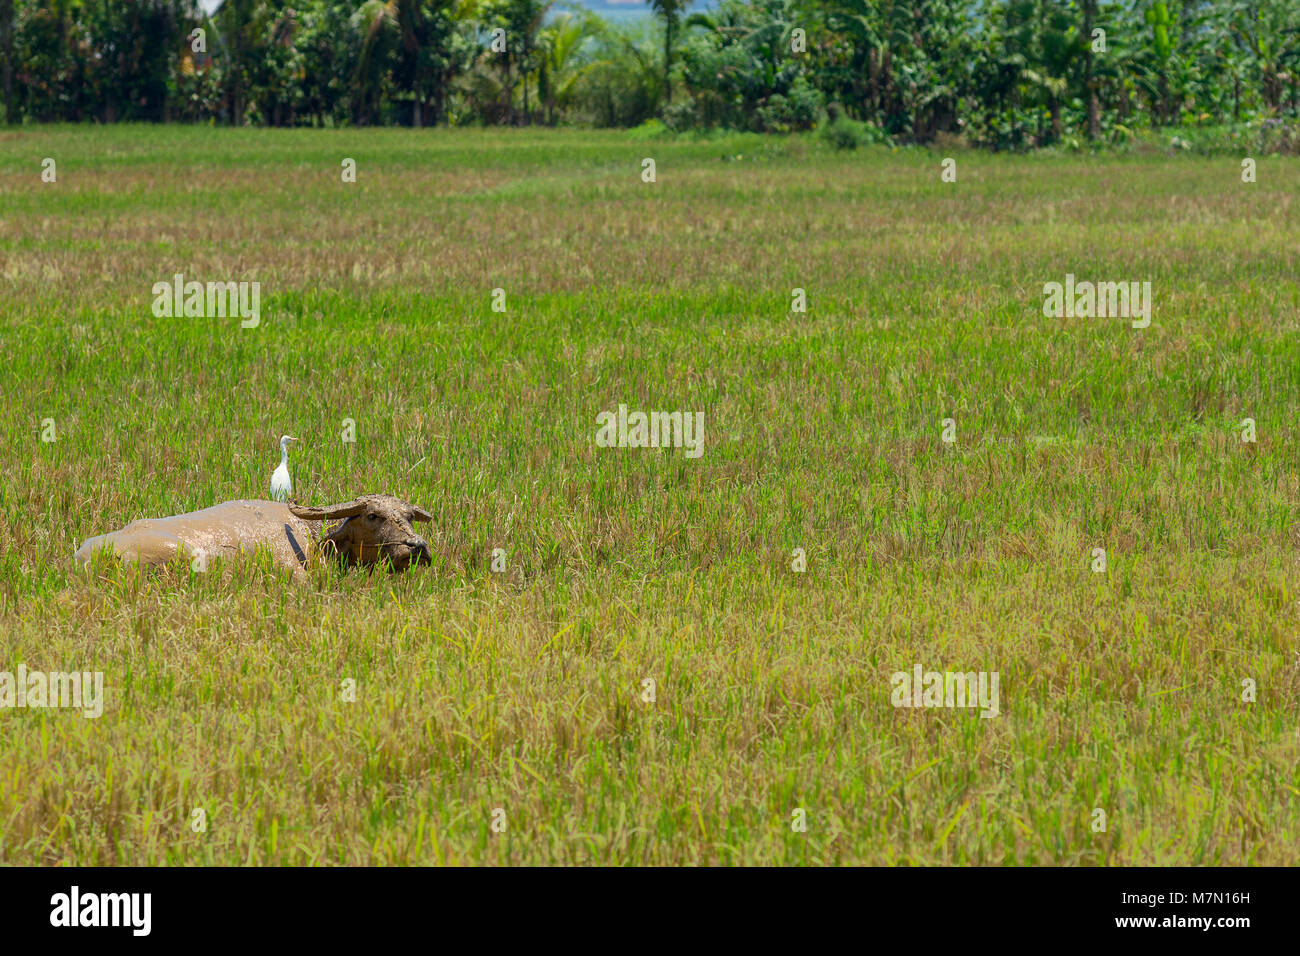 Un buffle d'eau boueuse fixées dans un champ de riz récolté avec son compagnon un oiseau aigrette neigeuse posée sur son dos. Banque D'Images